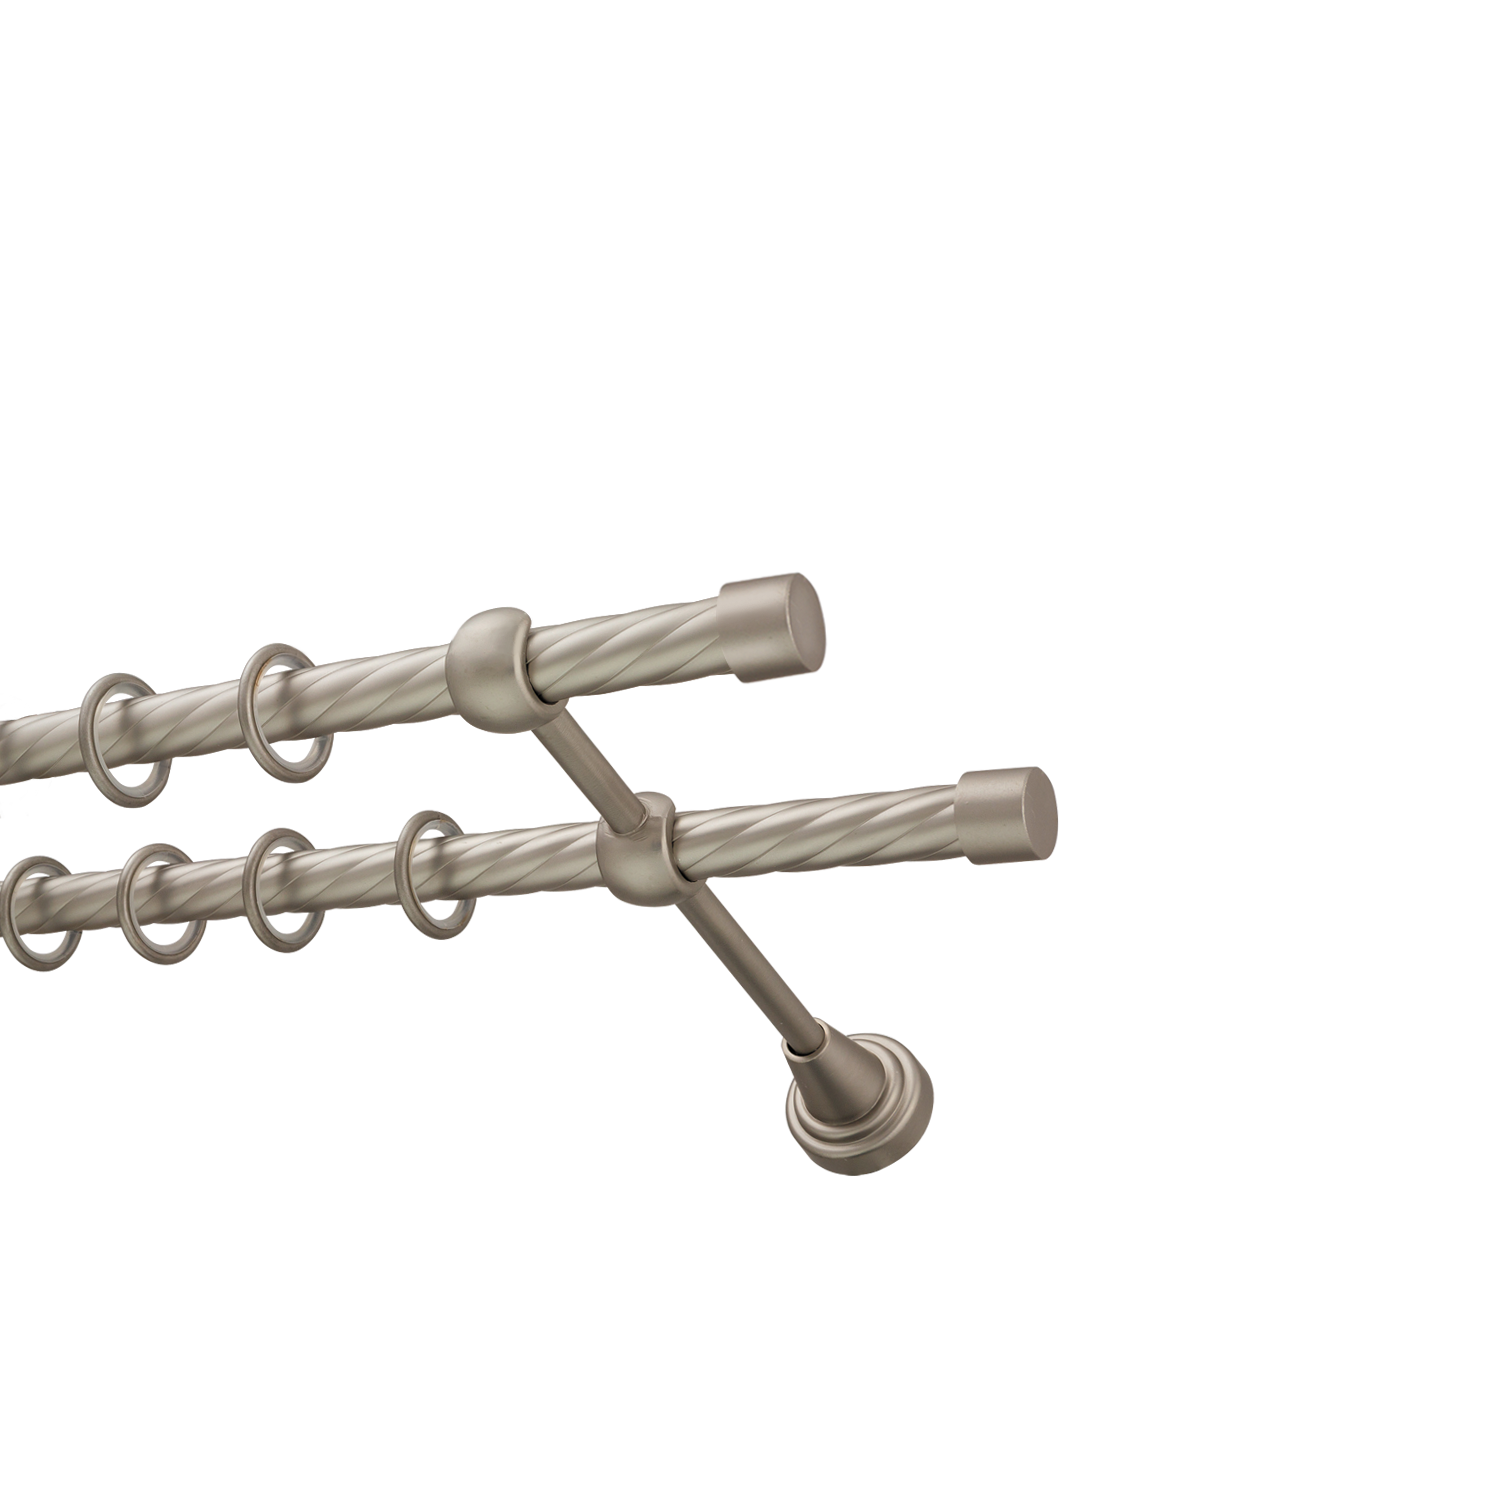 Металлический карниз для штор Заглушка, двухрядный 16/16 мм, сталь, витая штанга, длина 160 см - фото Wikidecor.ru